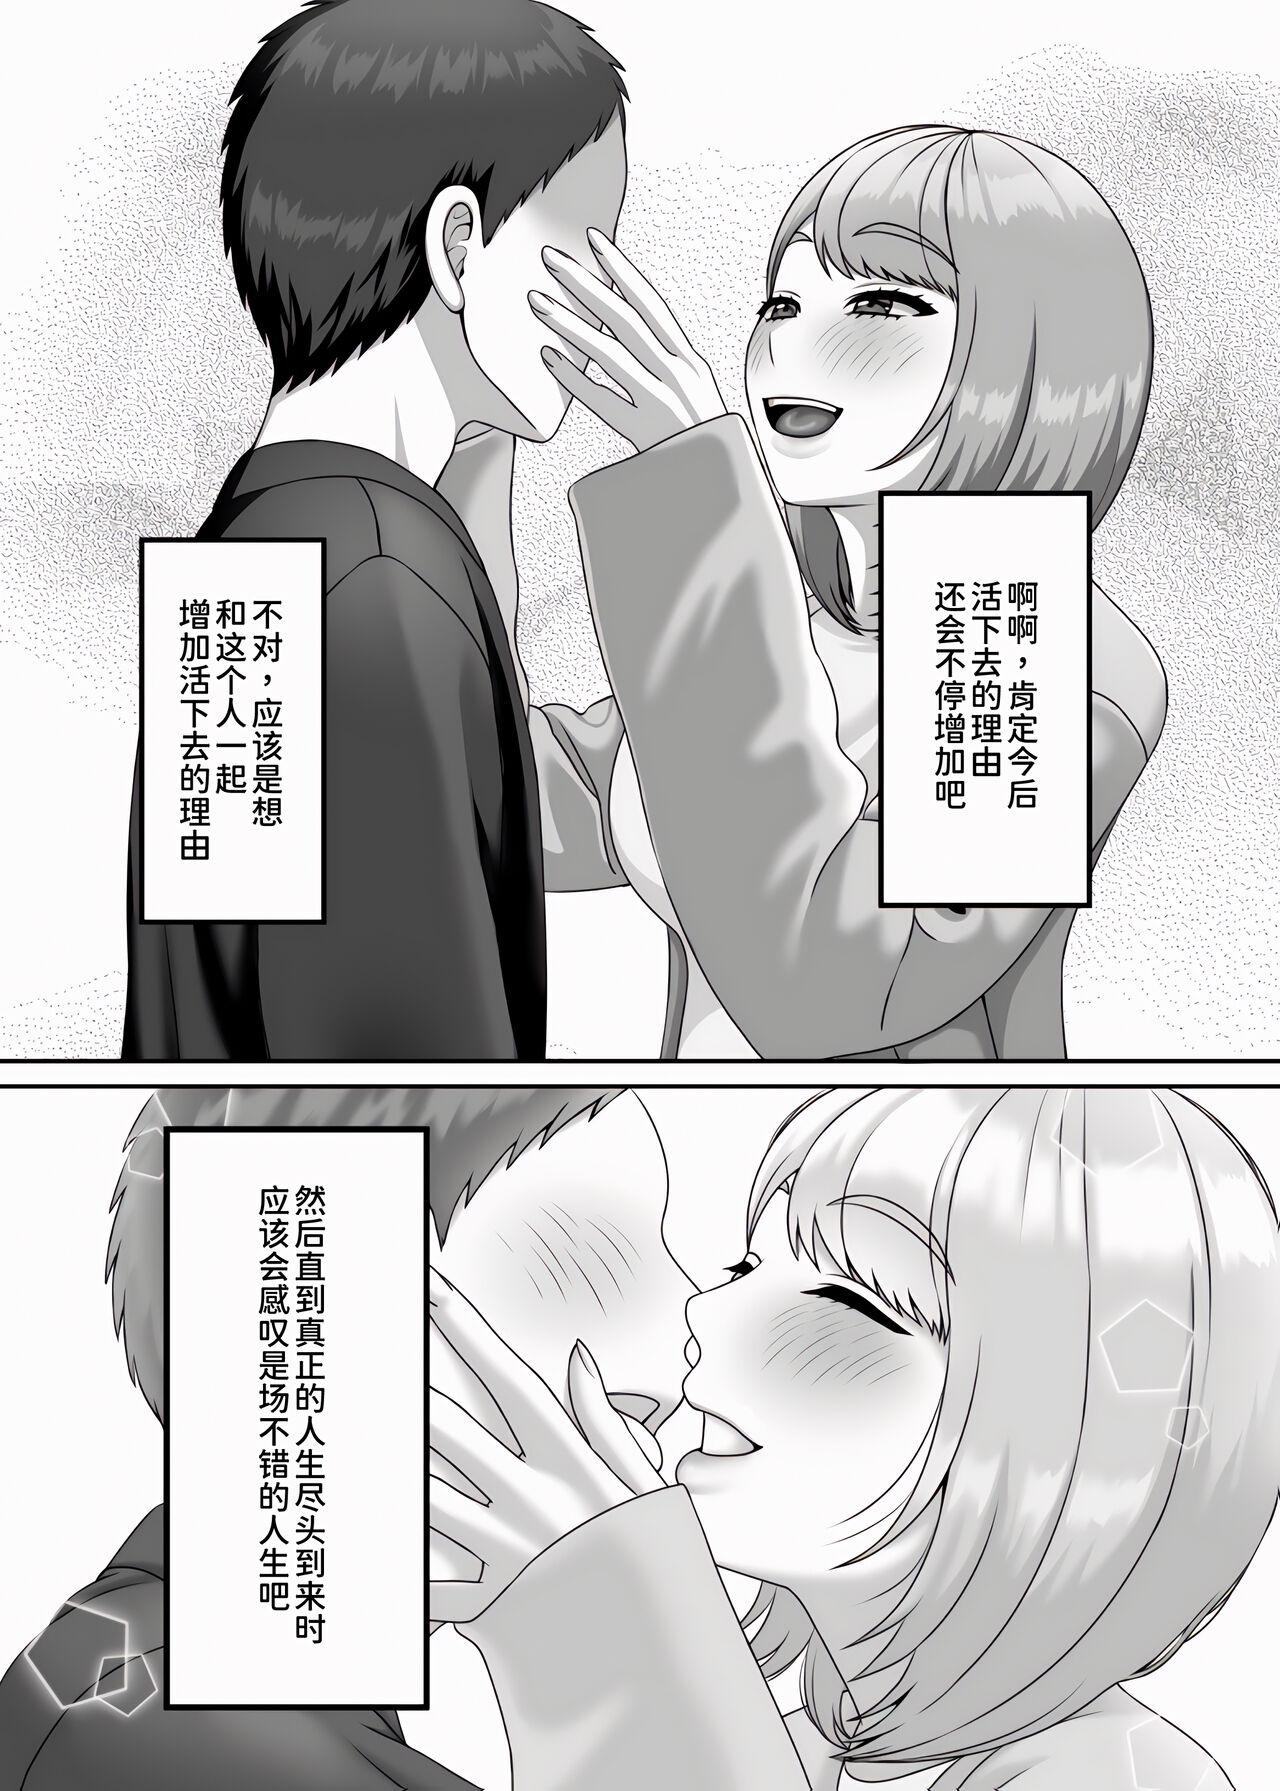 Tease Shi ga futari o wakatsu mae ni shitai koto - Original Aunty - Page 45